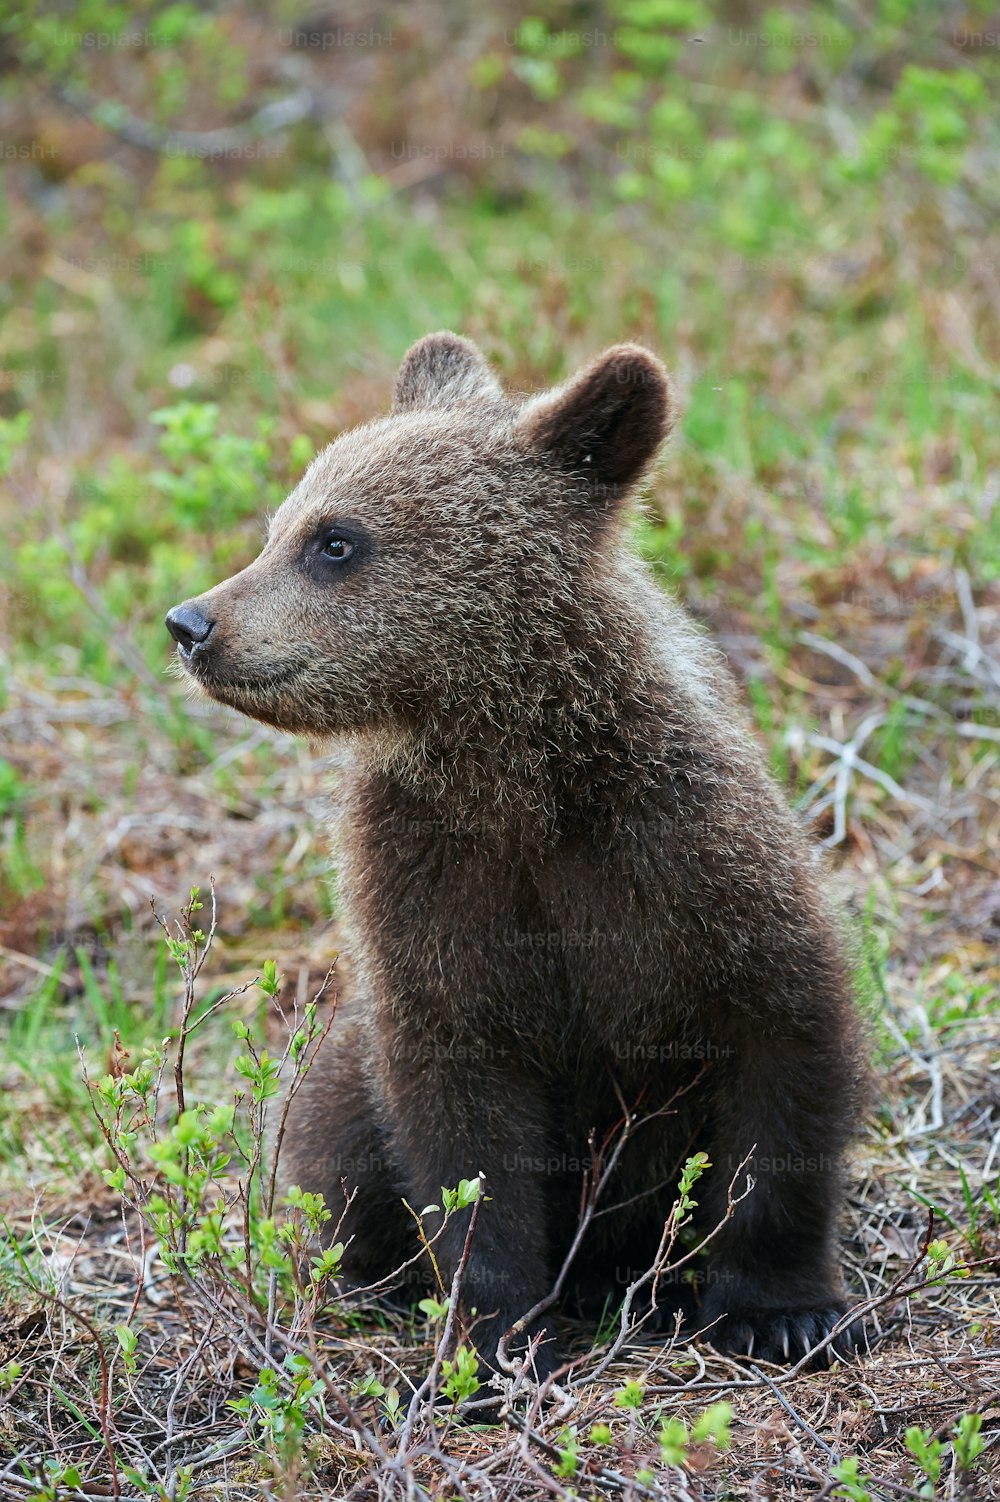 핀란드 타이가의 새끼 갈색 곰